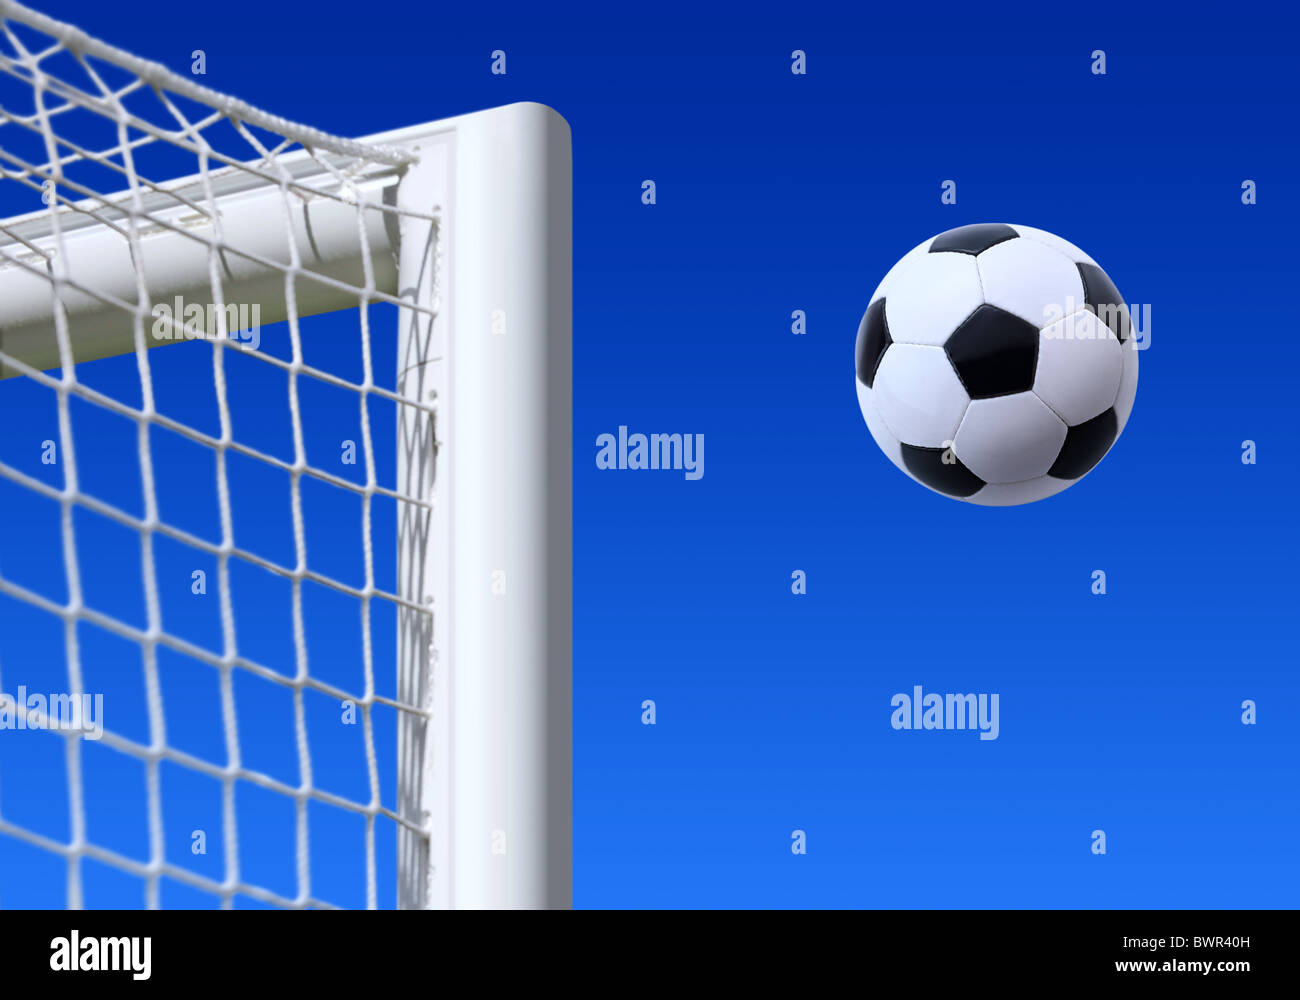 football entering the net scoring a goal Stock Photo